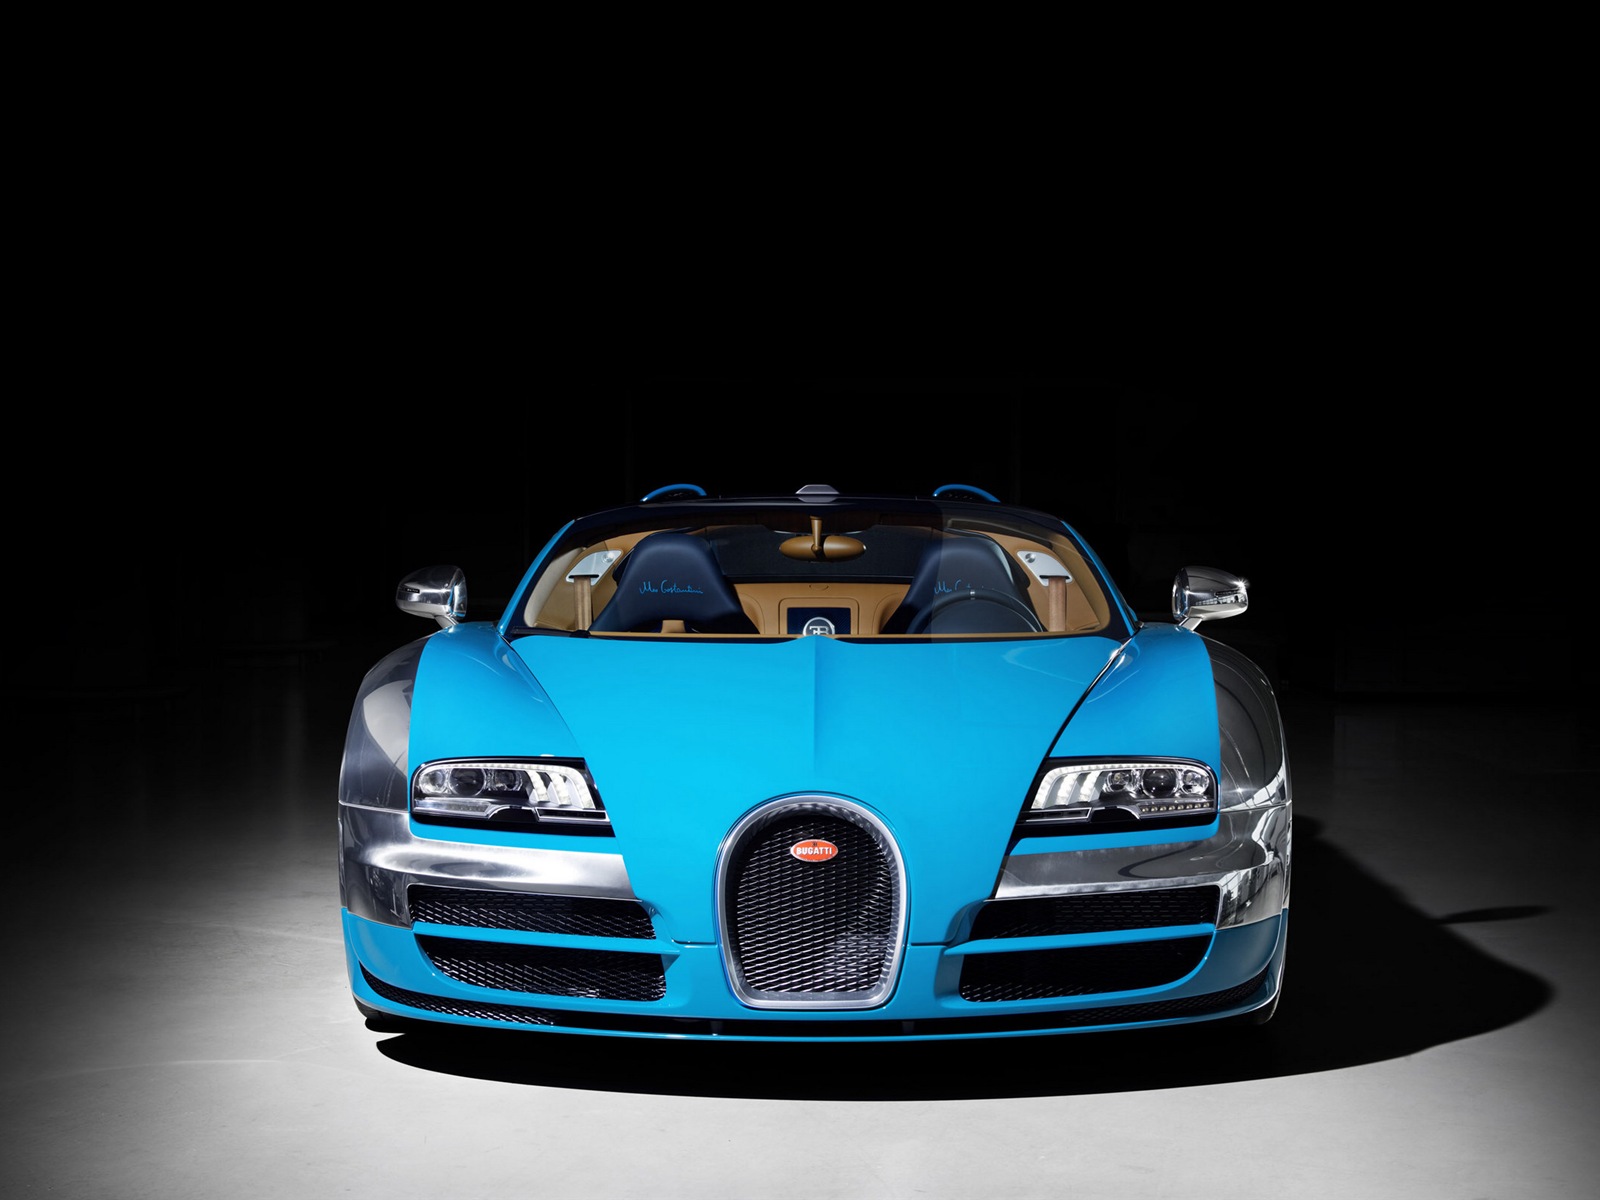 2013 Bugatti Veyron 16.4 Grand Sport Vitesse supercar fondos de pantalla de alta definición #2 - 1600x1200